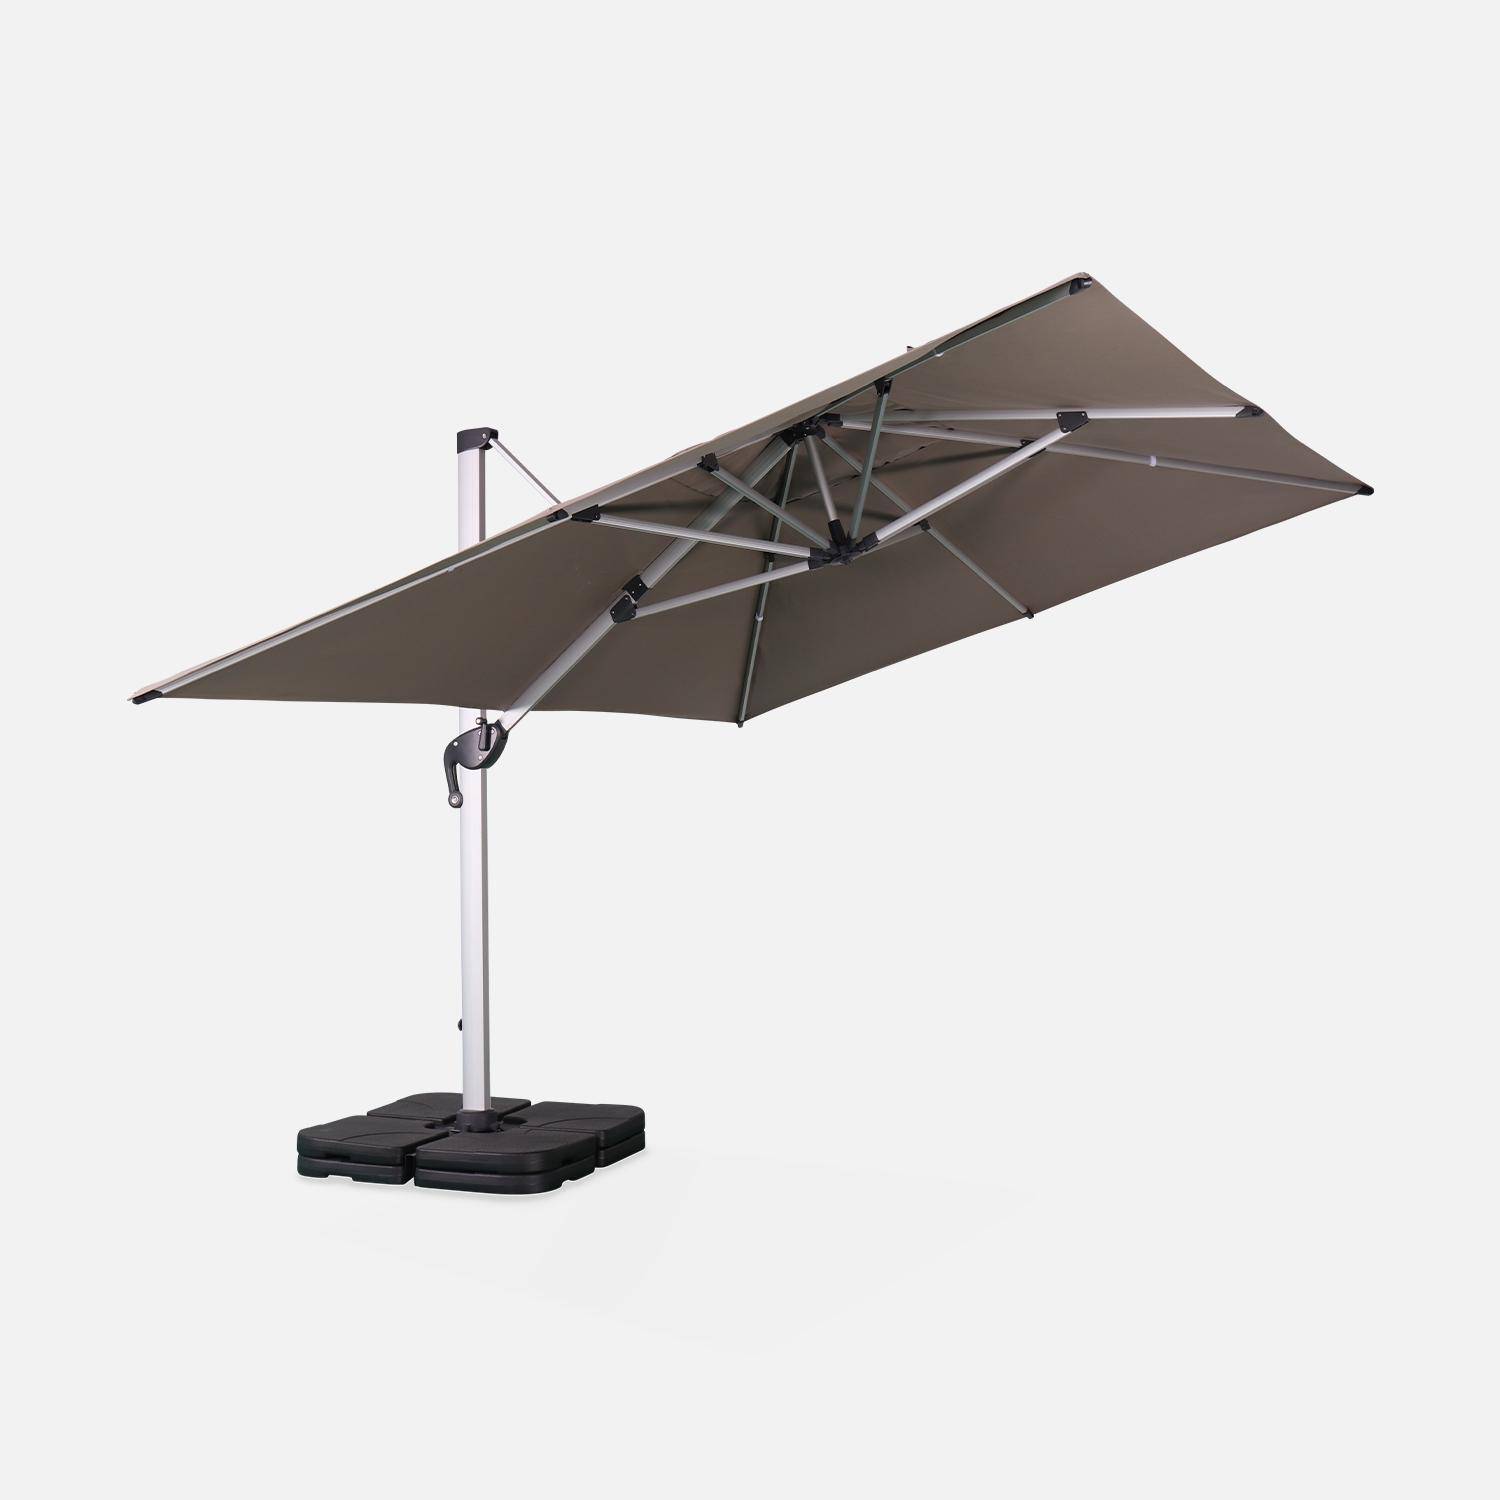 Parasol déporté haut de gamme carré 4x4m – PYLA Taupe – Toile Sunbrella ® fabriquée en France, par Dickson, structure en aluminium anodisé, rotatif, housse de protection Photo3